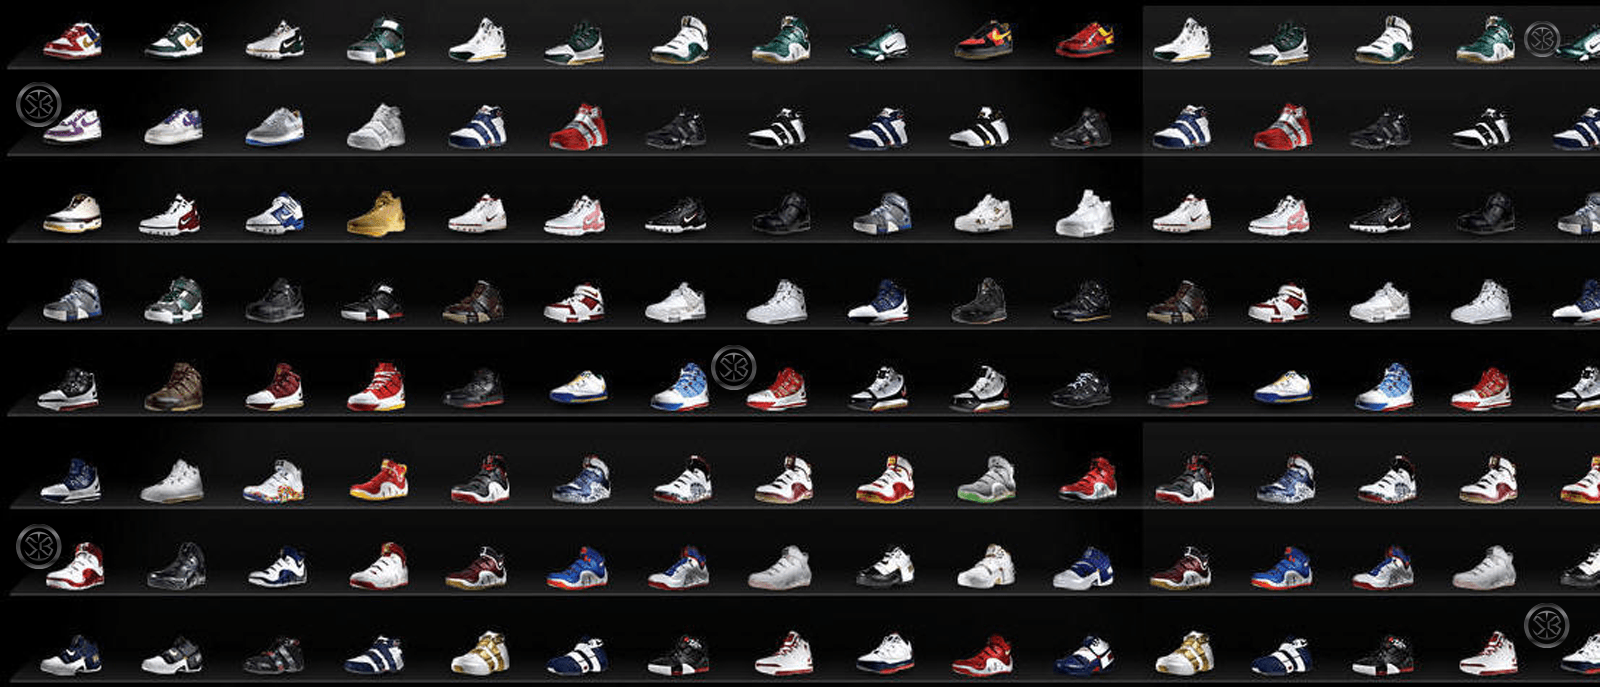 Sneaker Wallpaper Zone. SHOE'D UP